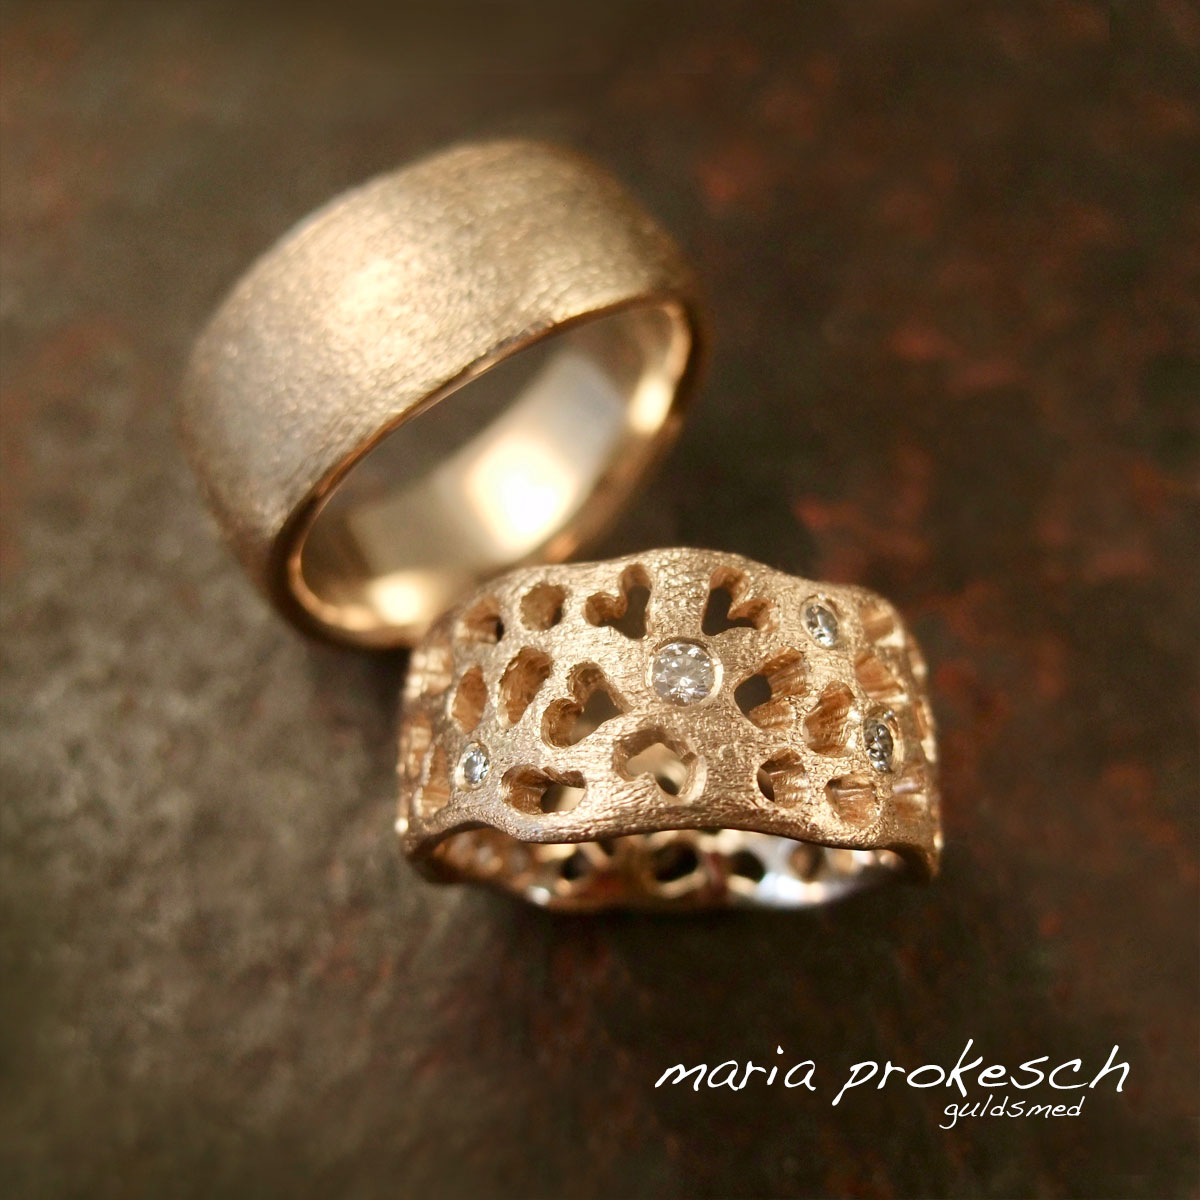 Rustikke kærlighedsringe i 14 karat guld. Damens ring med udsavninger af hjerter som blomst, personligt tegnet af ægtemanden. En gave til hende